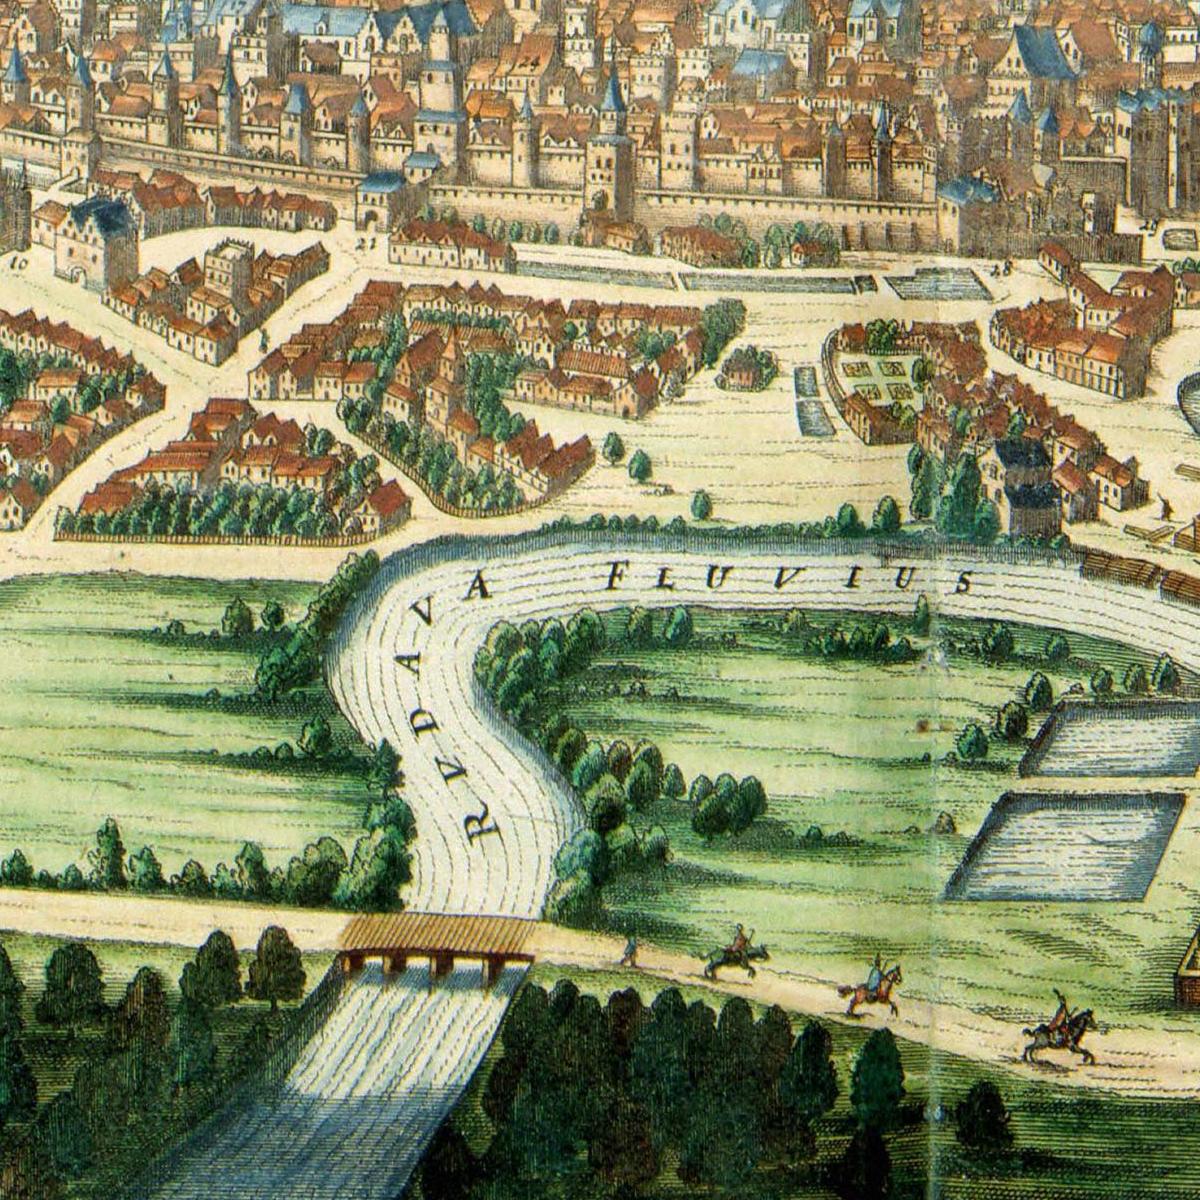 Historischer Stadtansicht Krakau um 1690